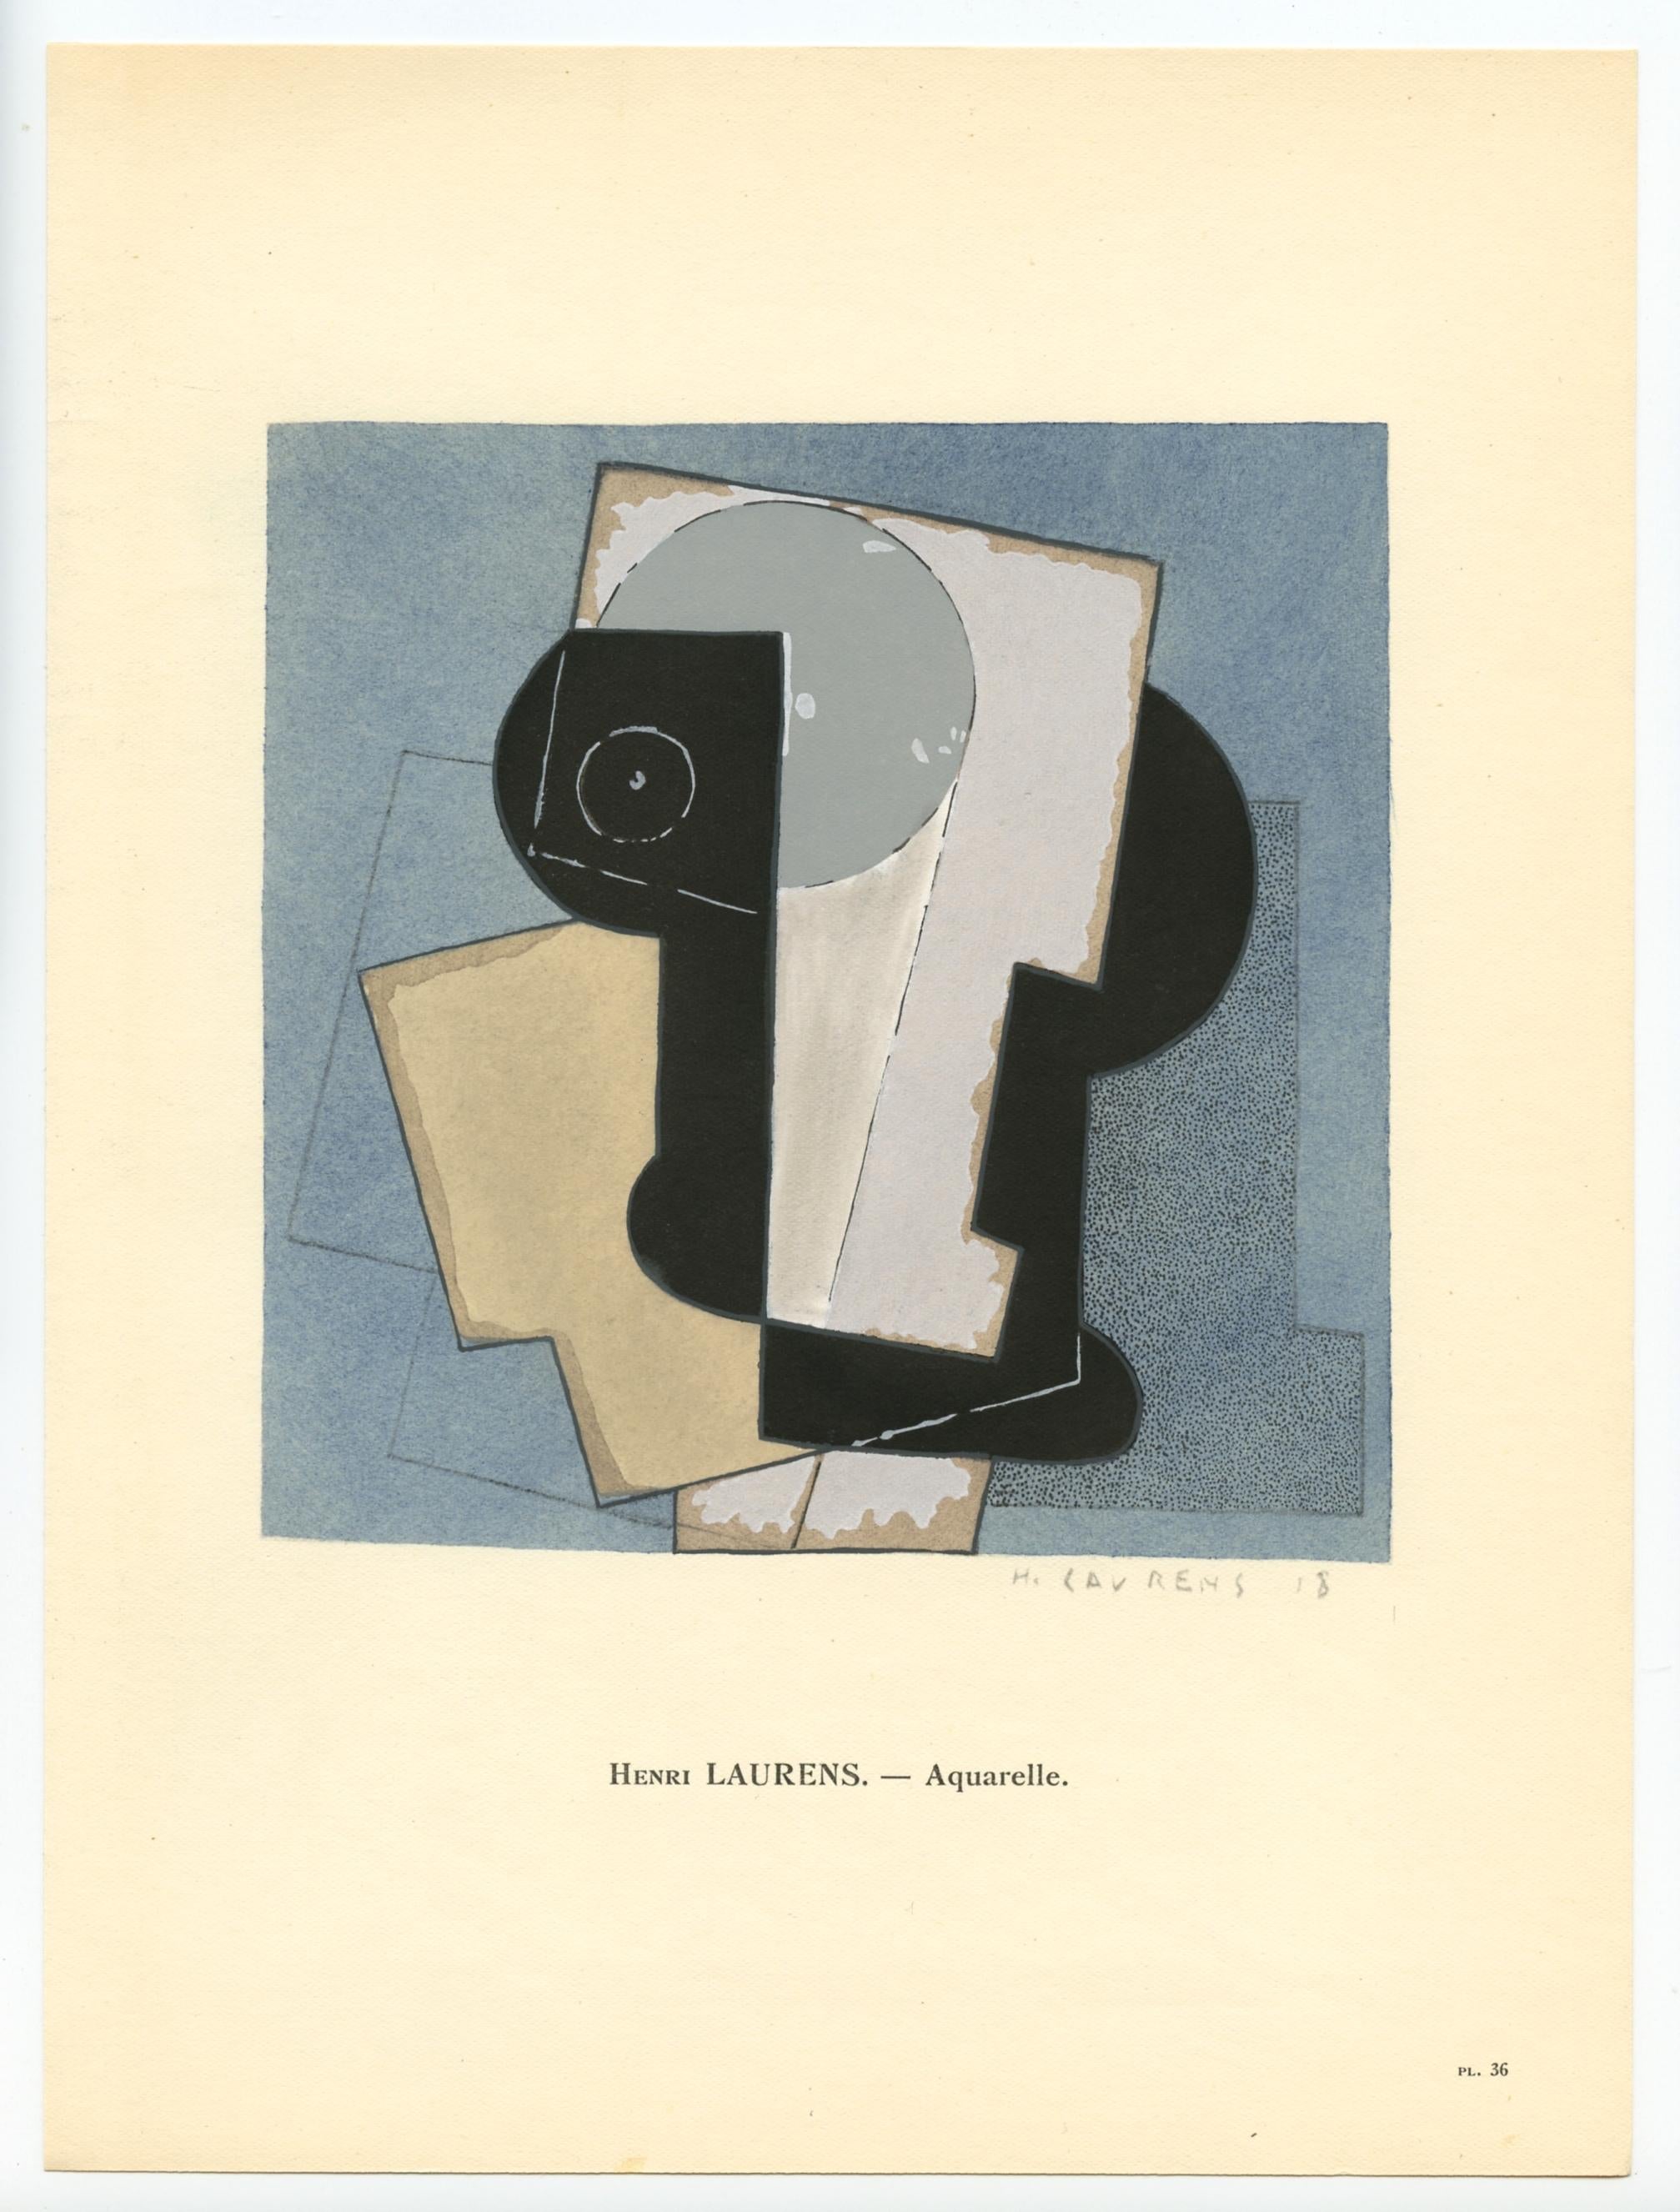 Moyen : pochoir (après la gouache). Imprimé à Paris en 1929 dans l'atelier de Daniel Jacomet pour L'Art Cubiste. Taille de l'image : 5 1/4 x 8 1/8 pouces (132 x 205 mm). Une inscription sous l'image identifie l'artiste. Signé dans la plaque (pas à